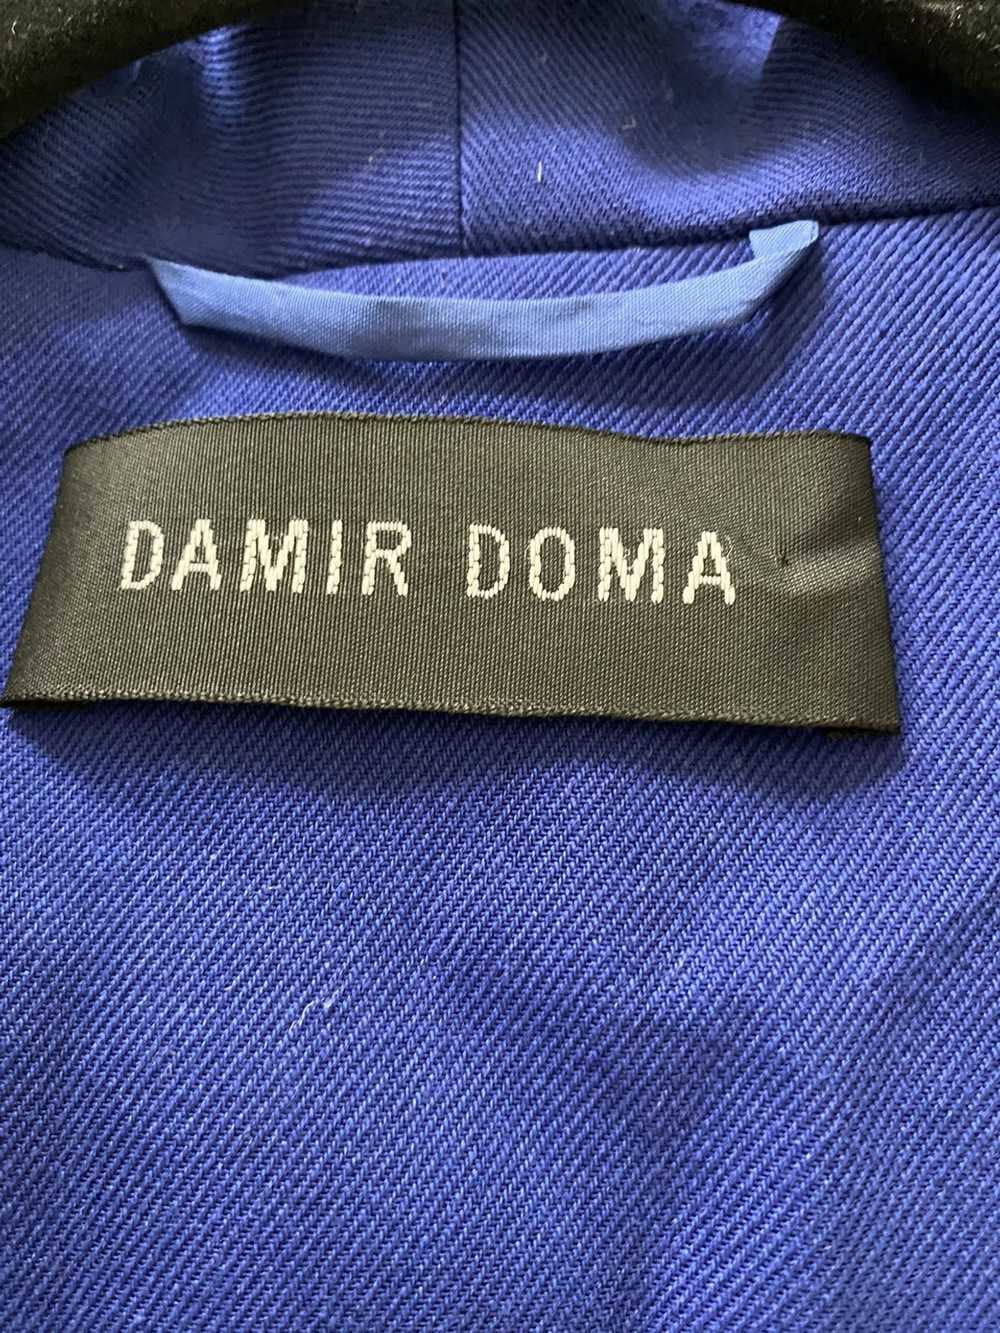 Damir Doma Damir Doma Blue Canvas Vest - image 4